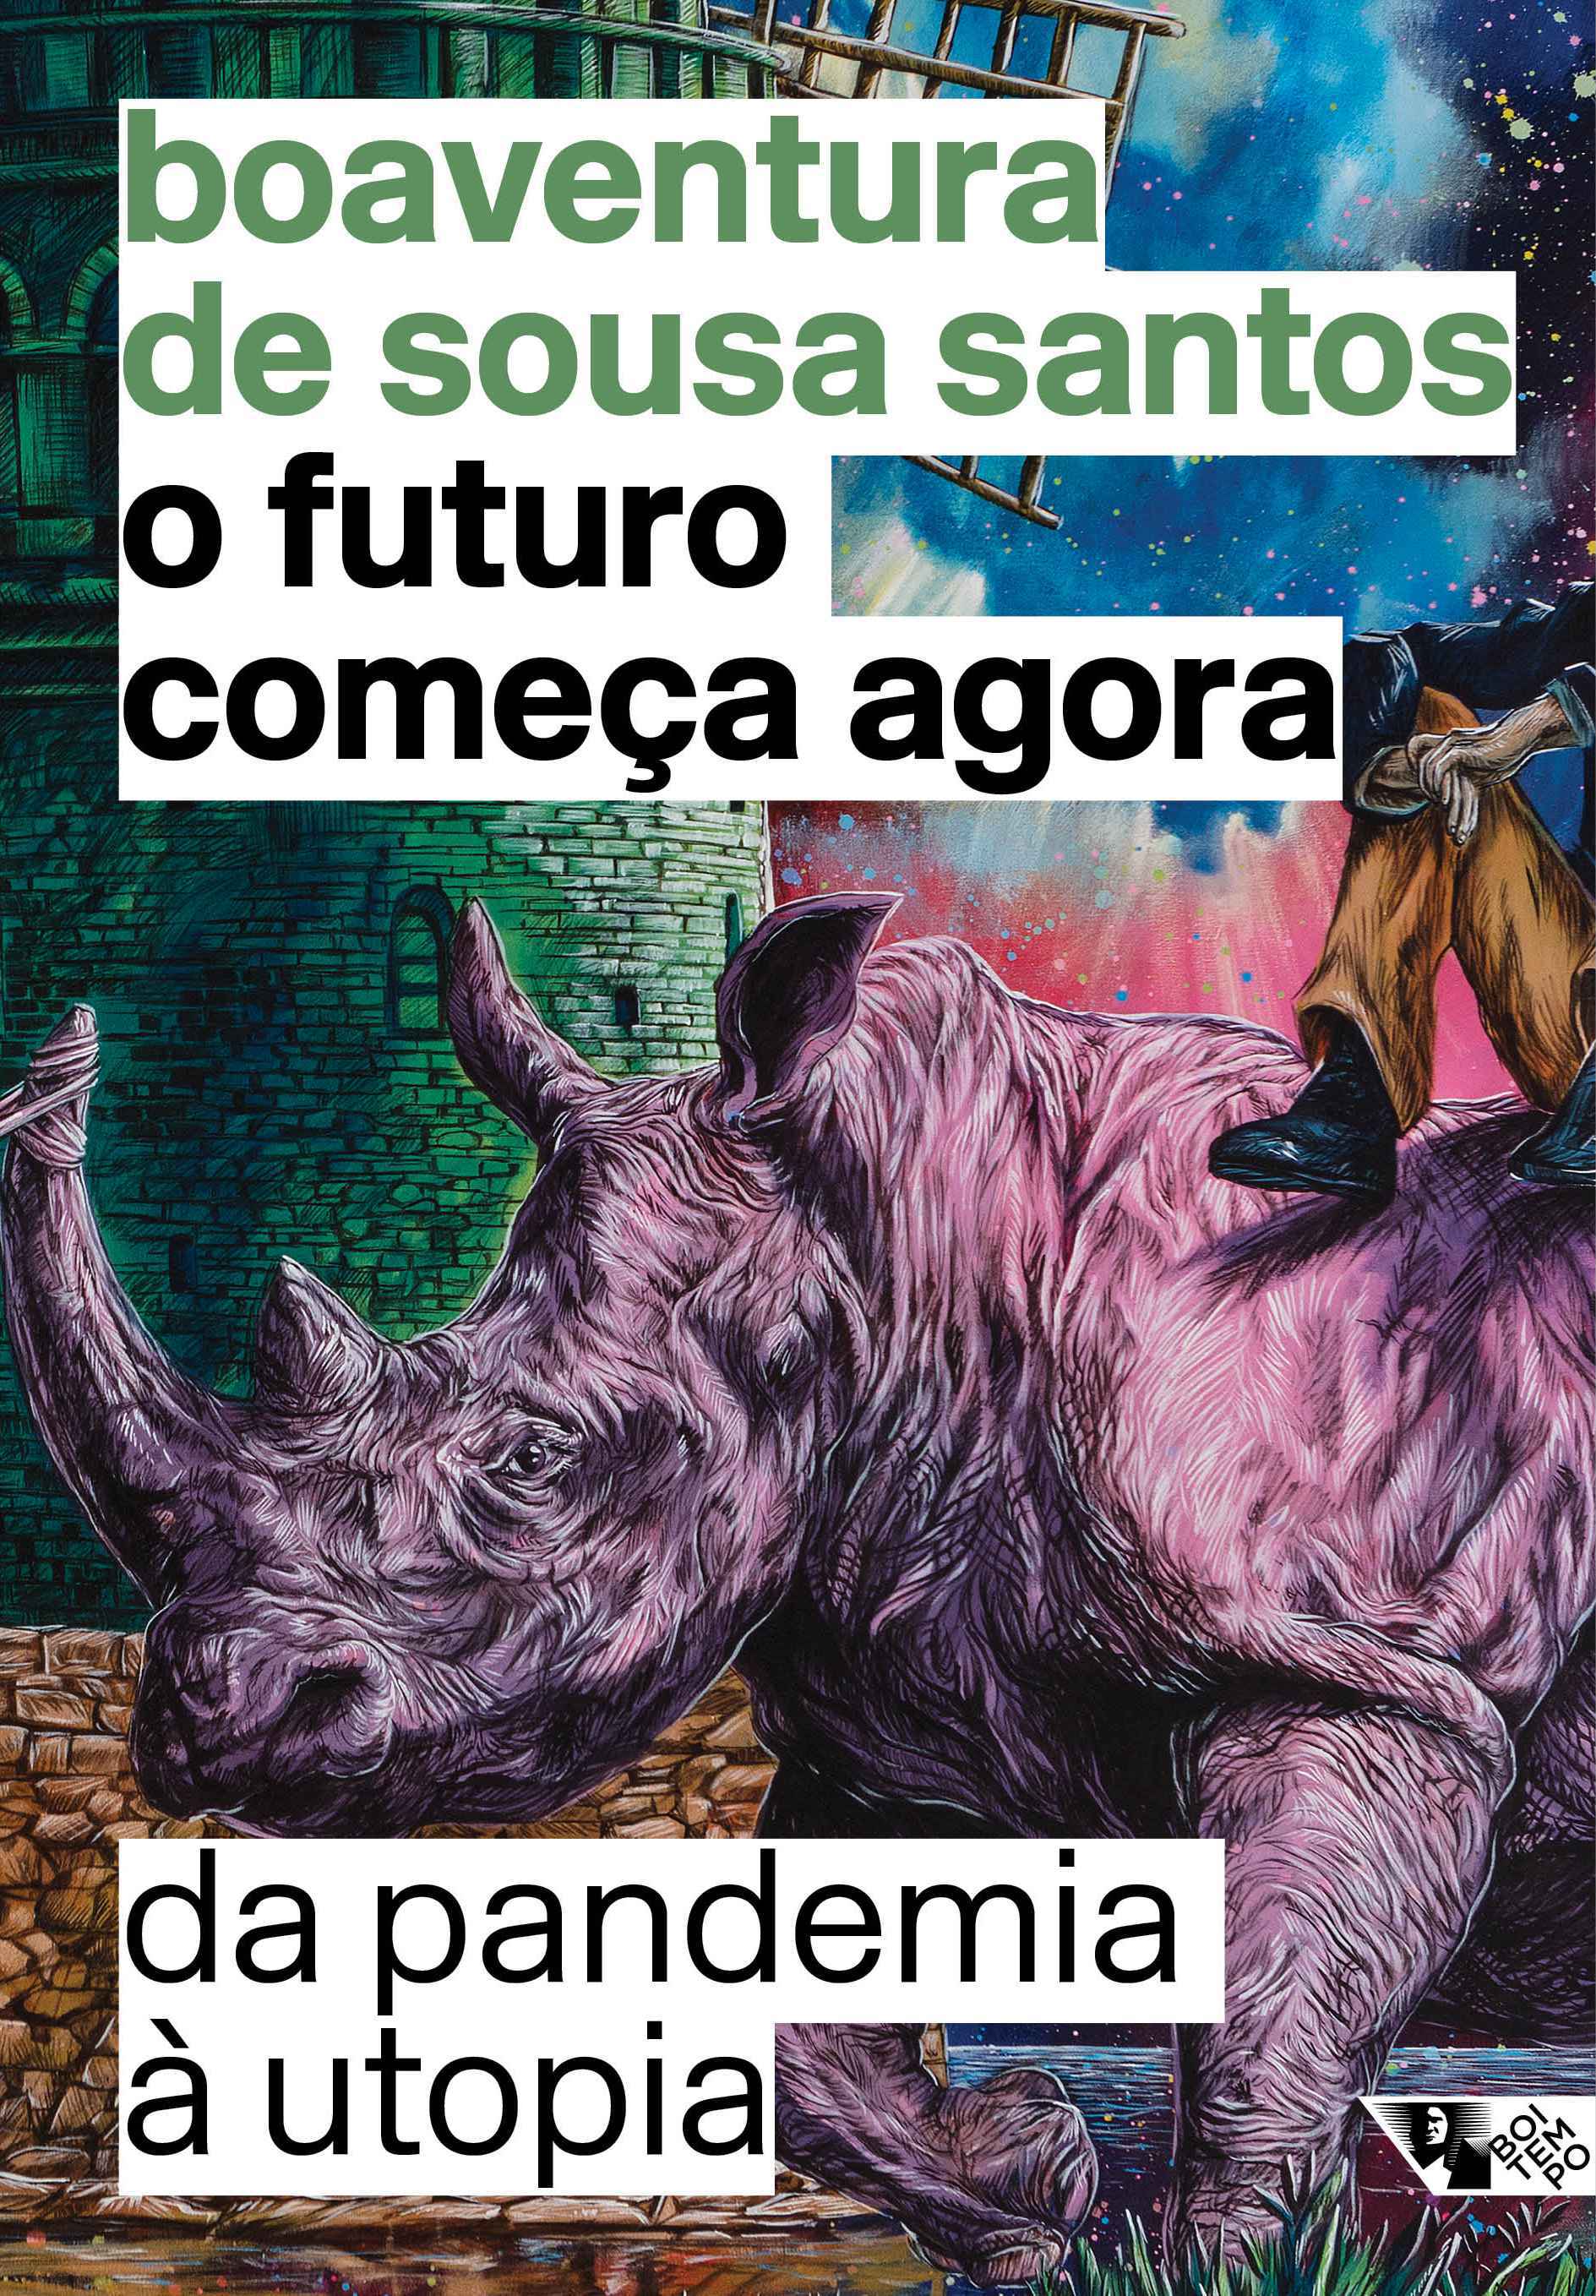 'O futuro começa agora: da pandemia à utopia', de Boaventura de Sousa Santos, instant book lançado recentemente